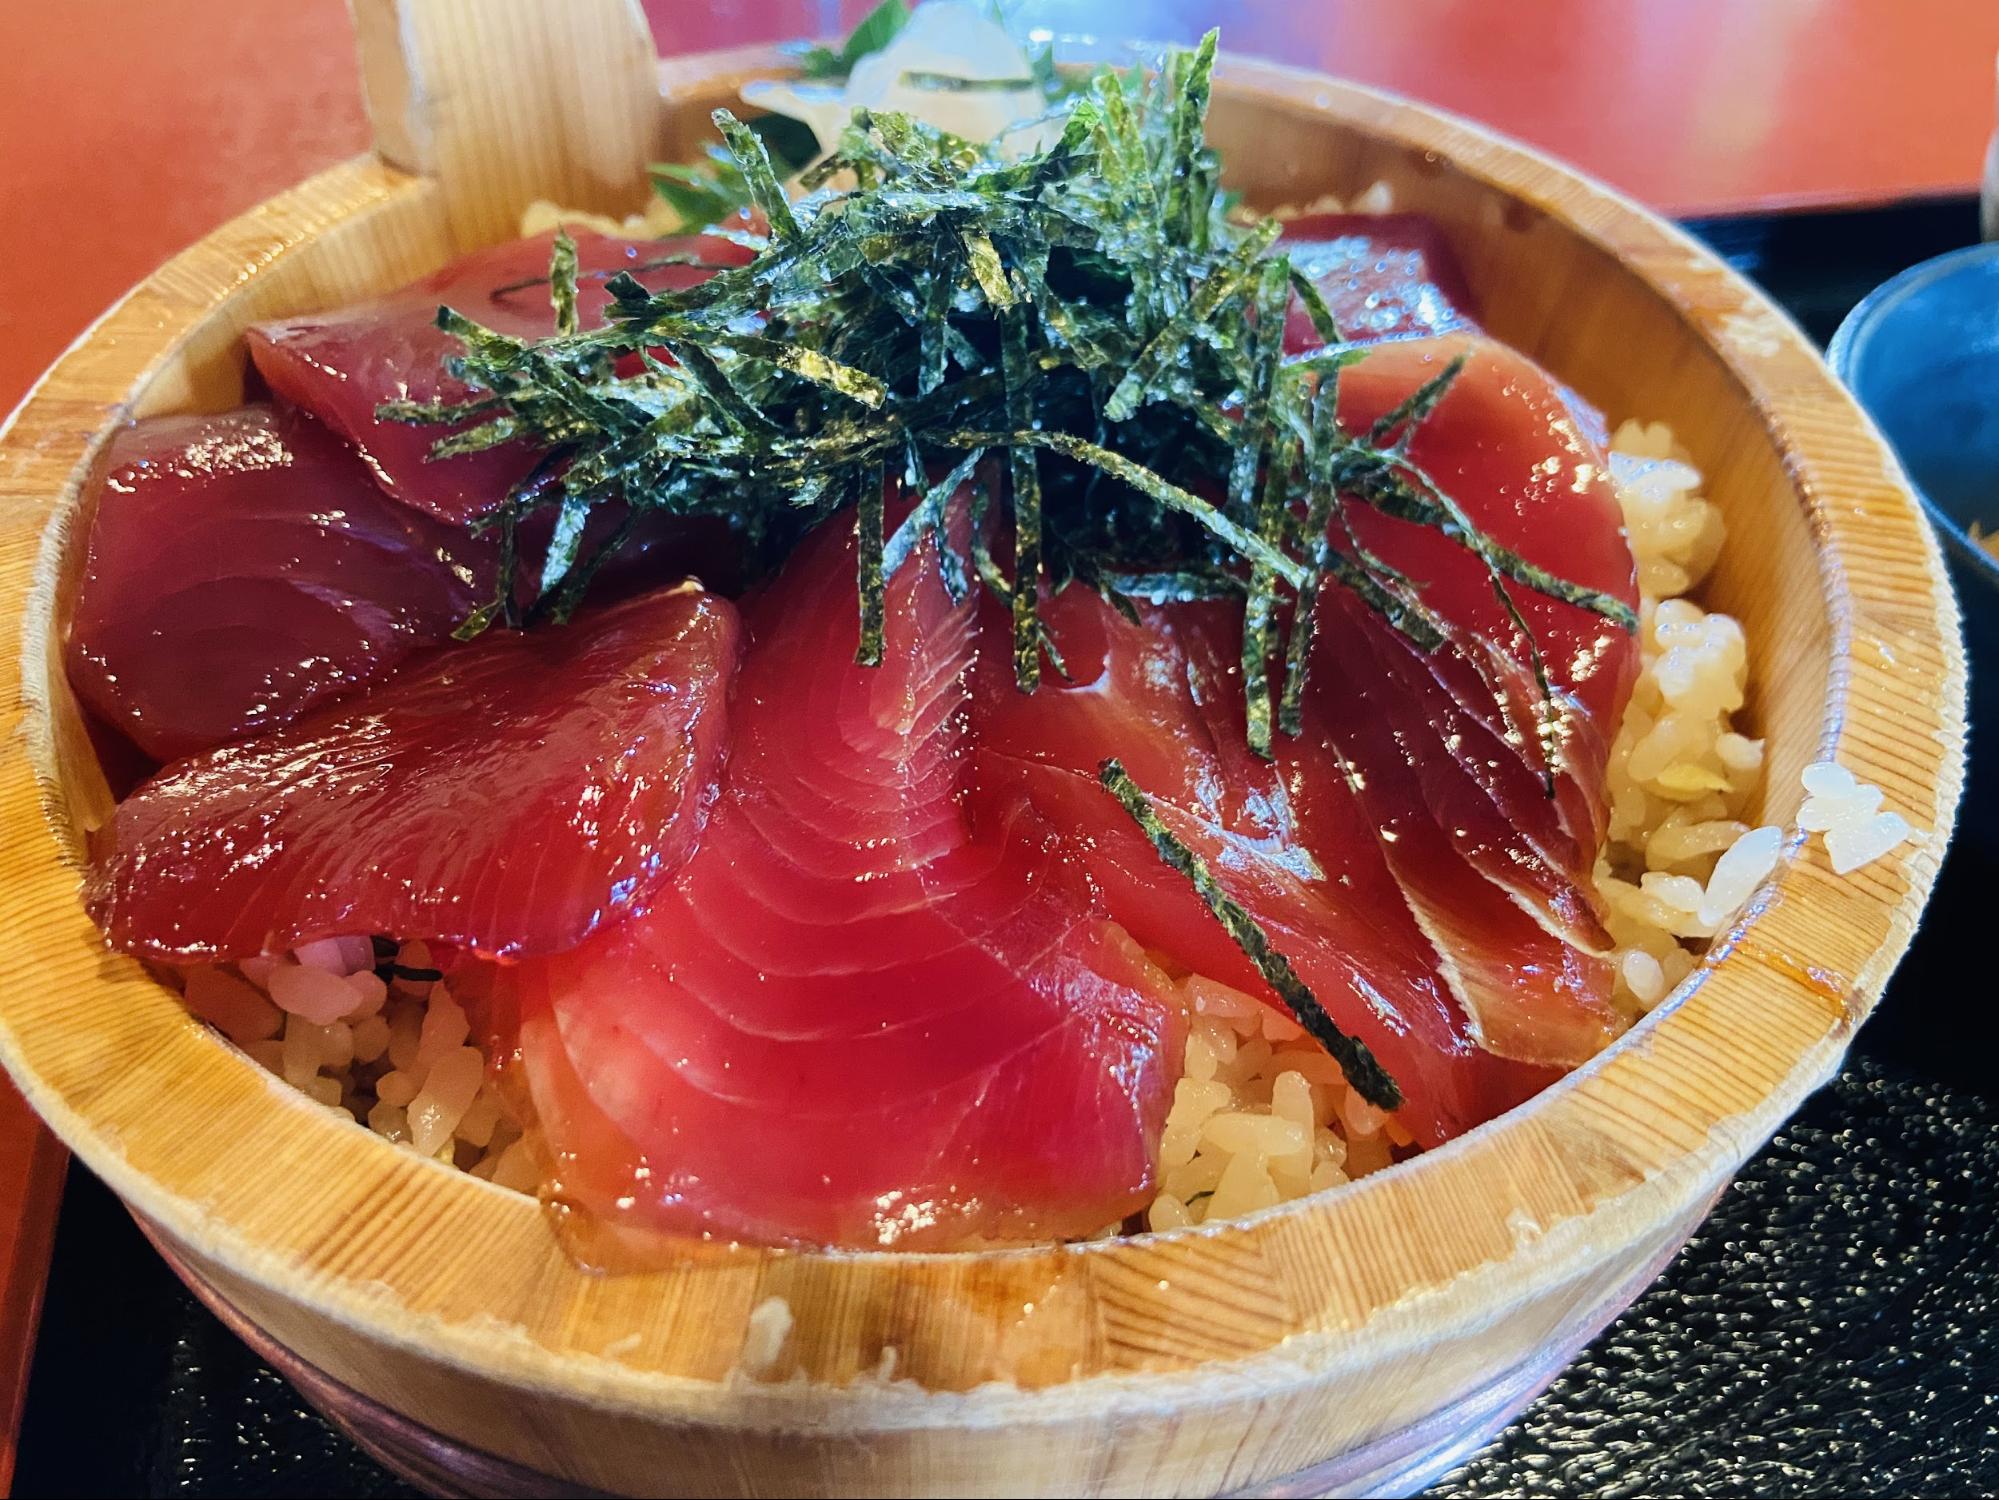 回転寿司を久留米市で楽しむなら山下鮮魚店直営 すし一番 | 破格の値段